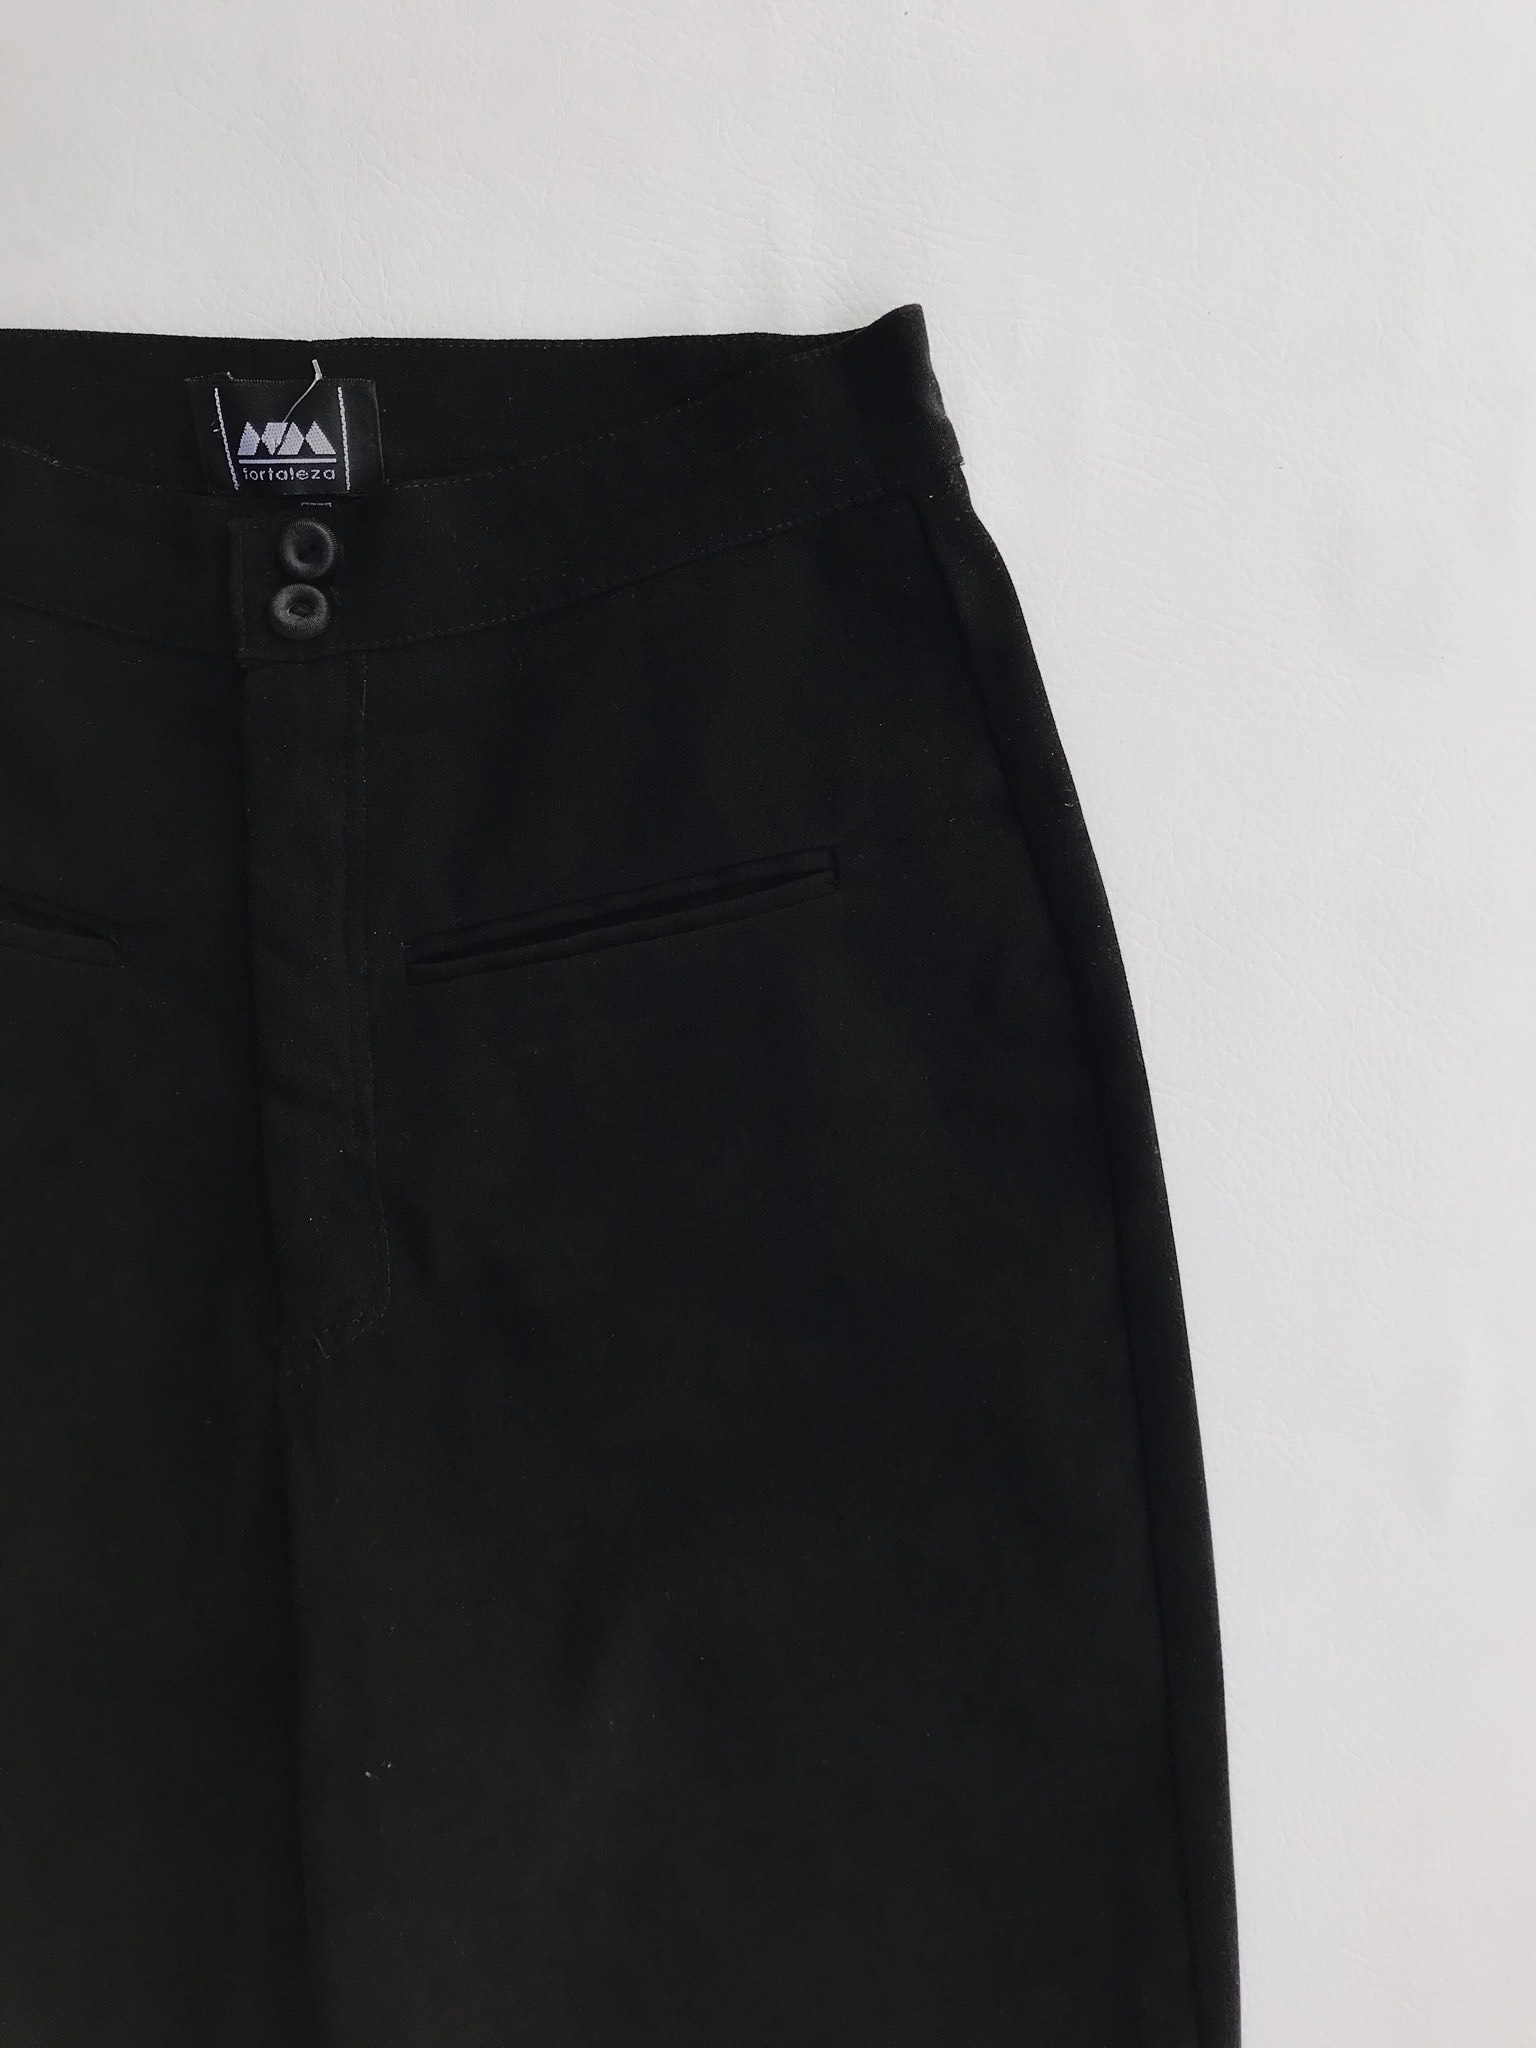 Pantalón vintage negro a la cintura, tela tipo pana, pretina delgada con dos botones, bolsillos delanteros y pinzas posteriores y pierna recta. ¡Lindo!
Talla 26